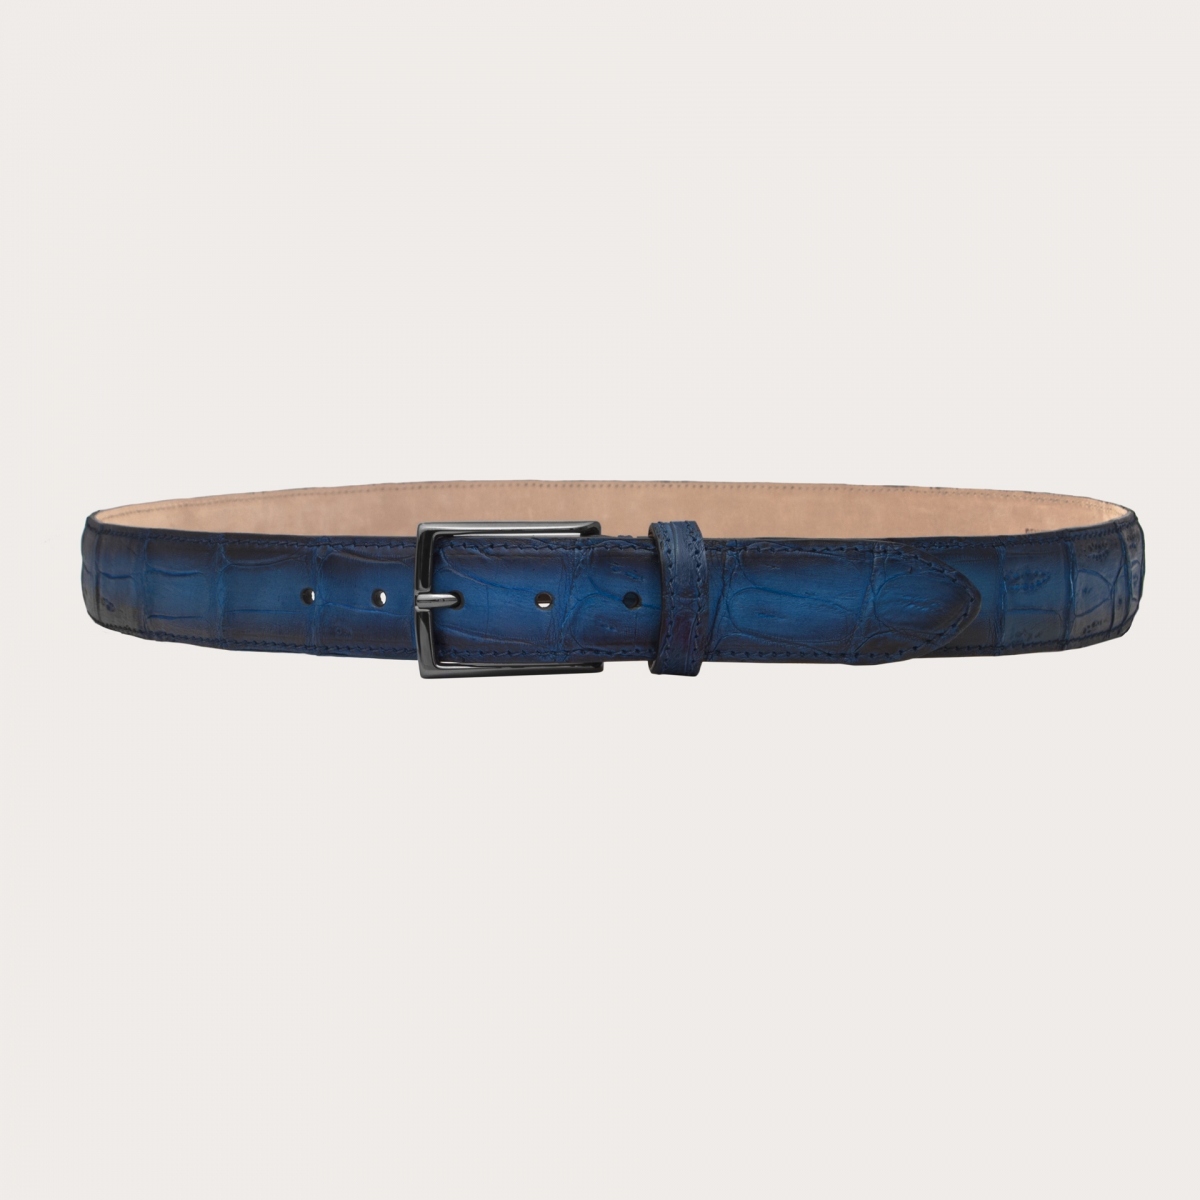 BRUCLE Cintura trendy in pelle di coccodrillo nickel free con patina, blu sfumato